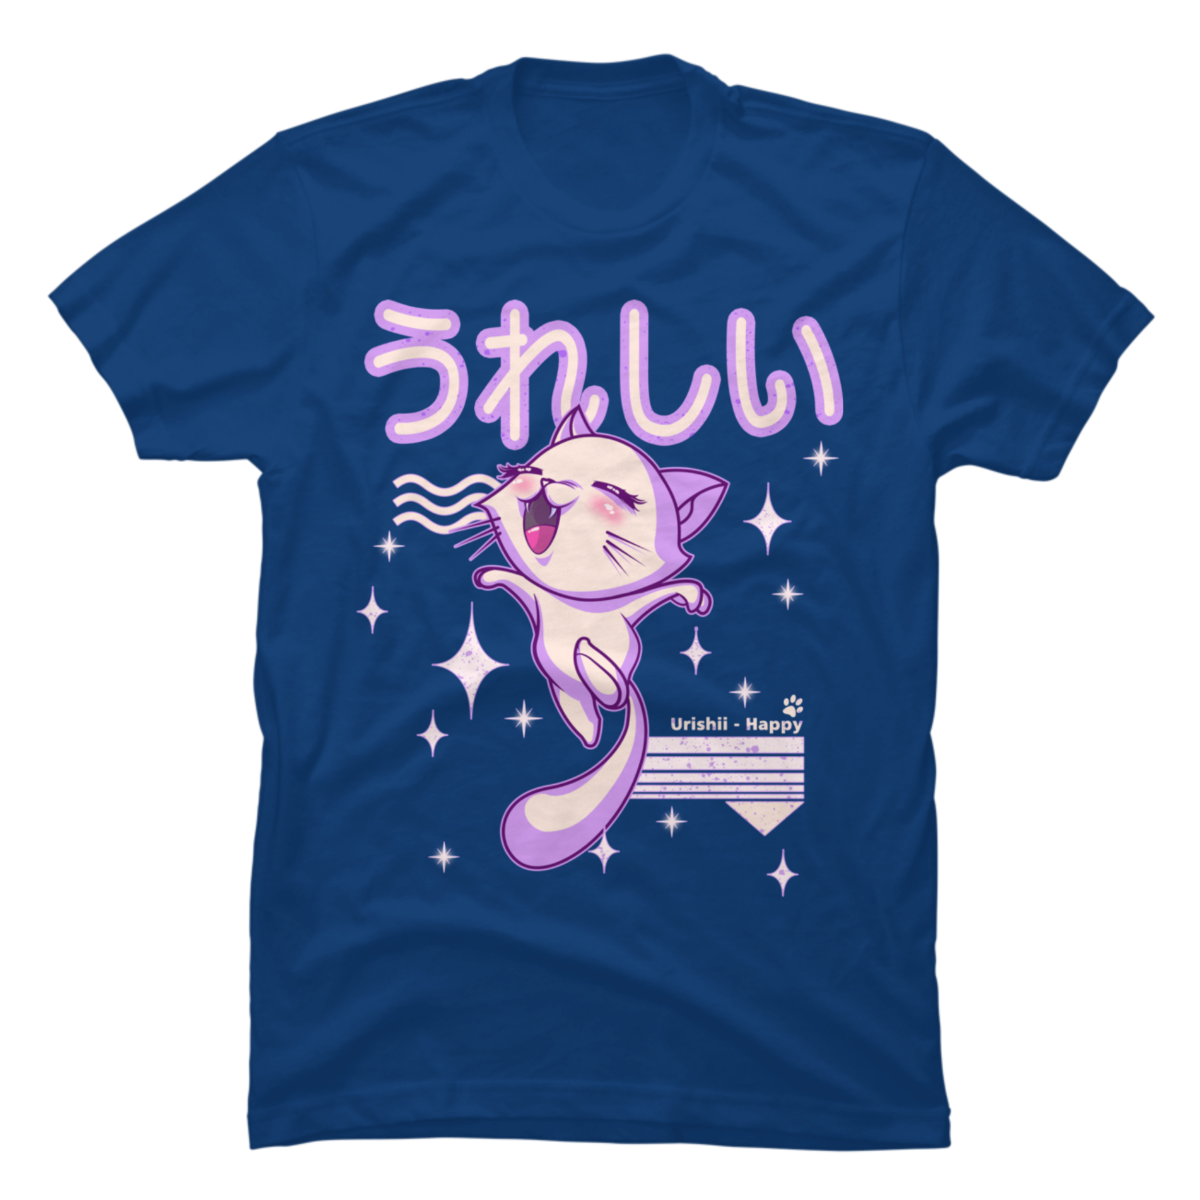 japanese cat shirt